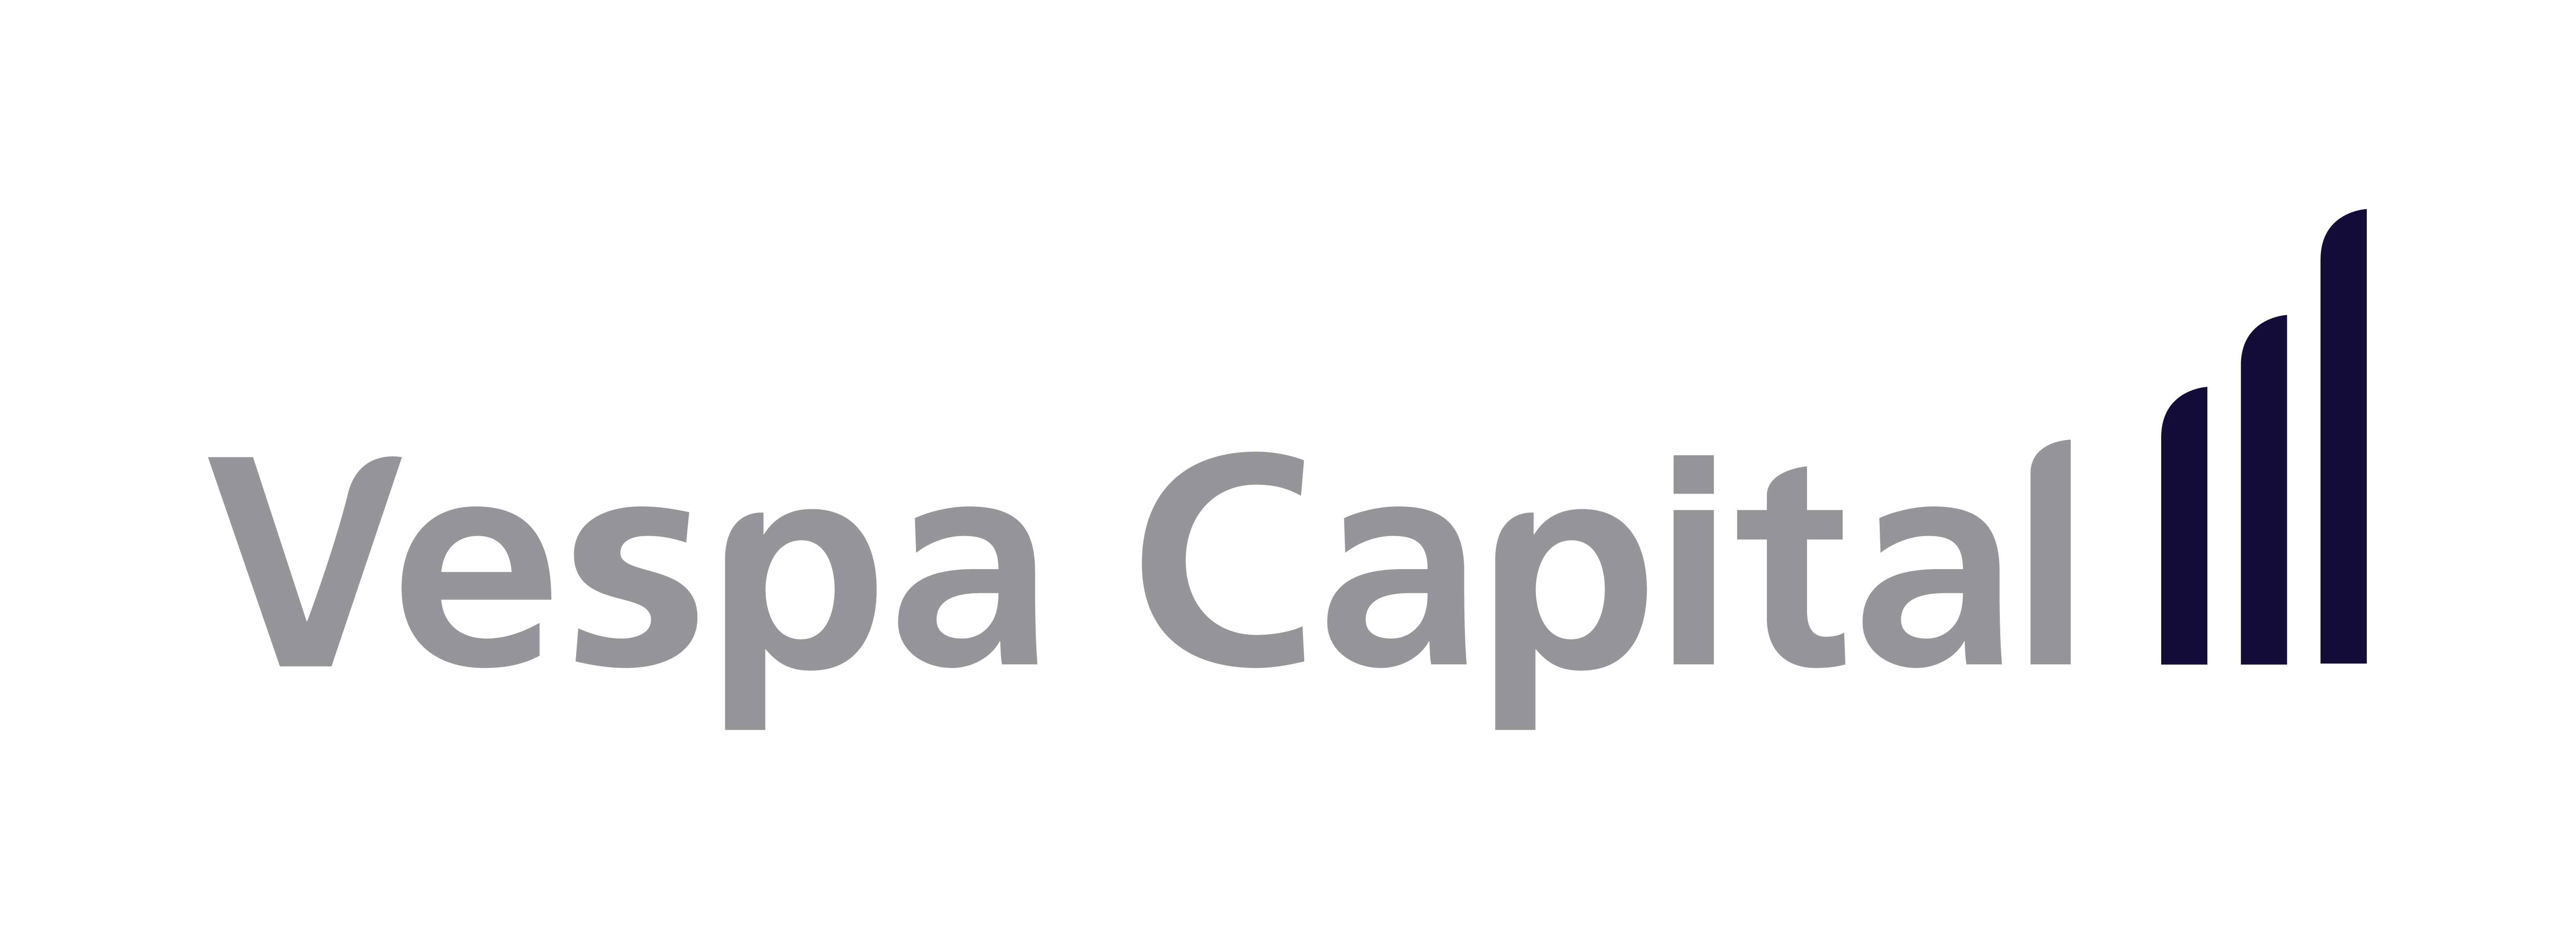 Vespa Capital Linkedin